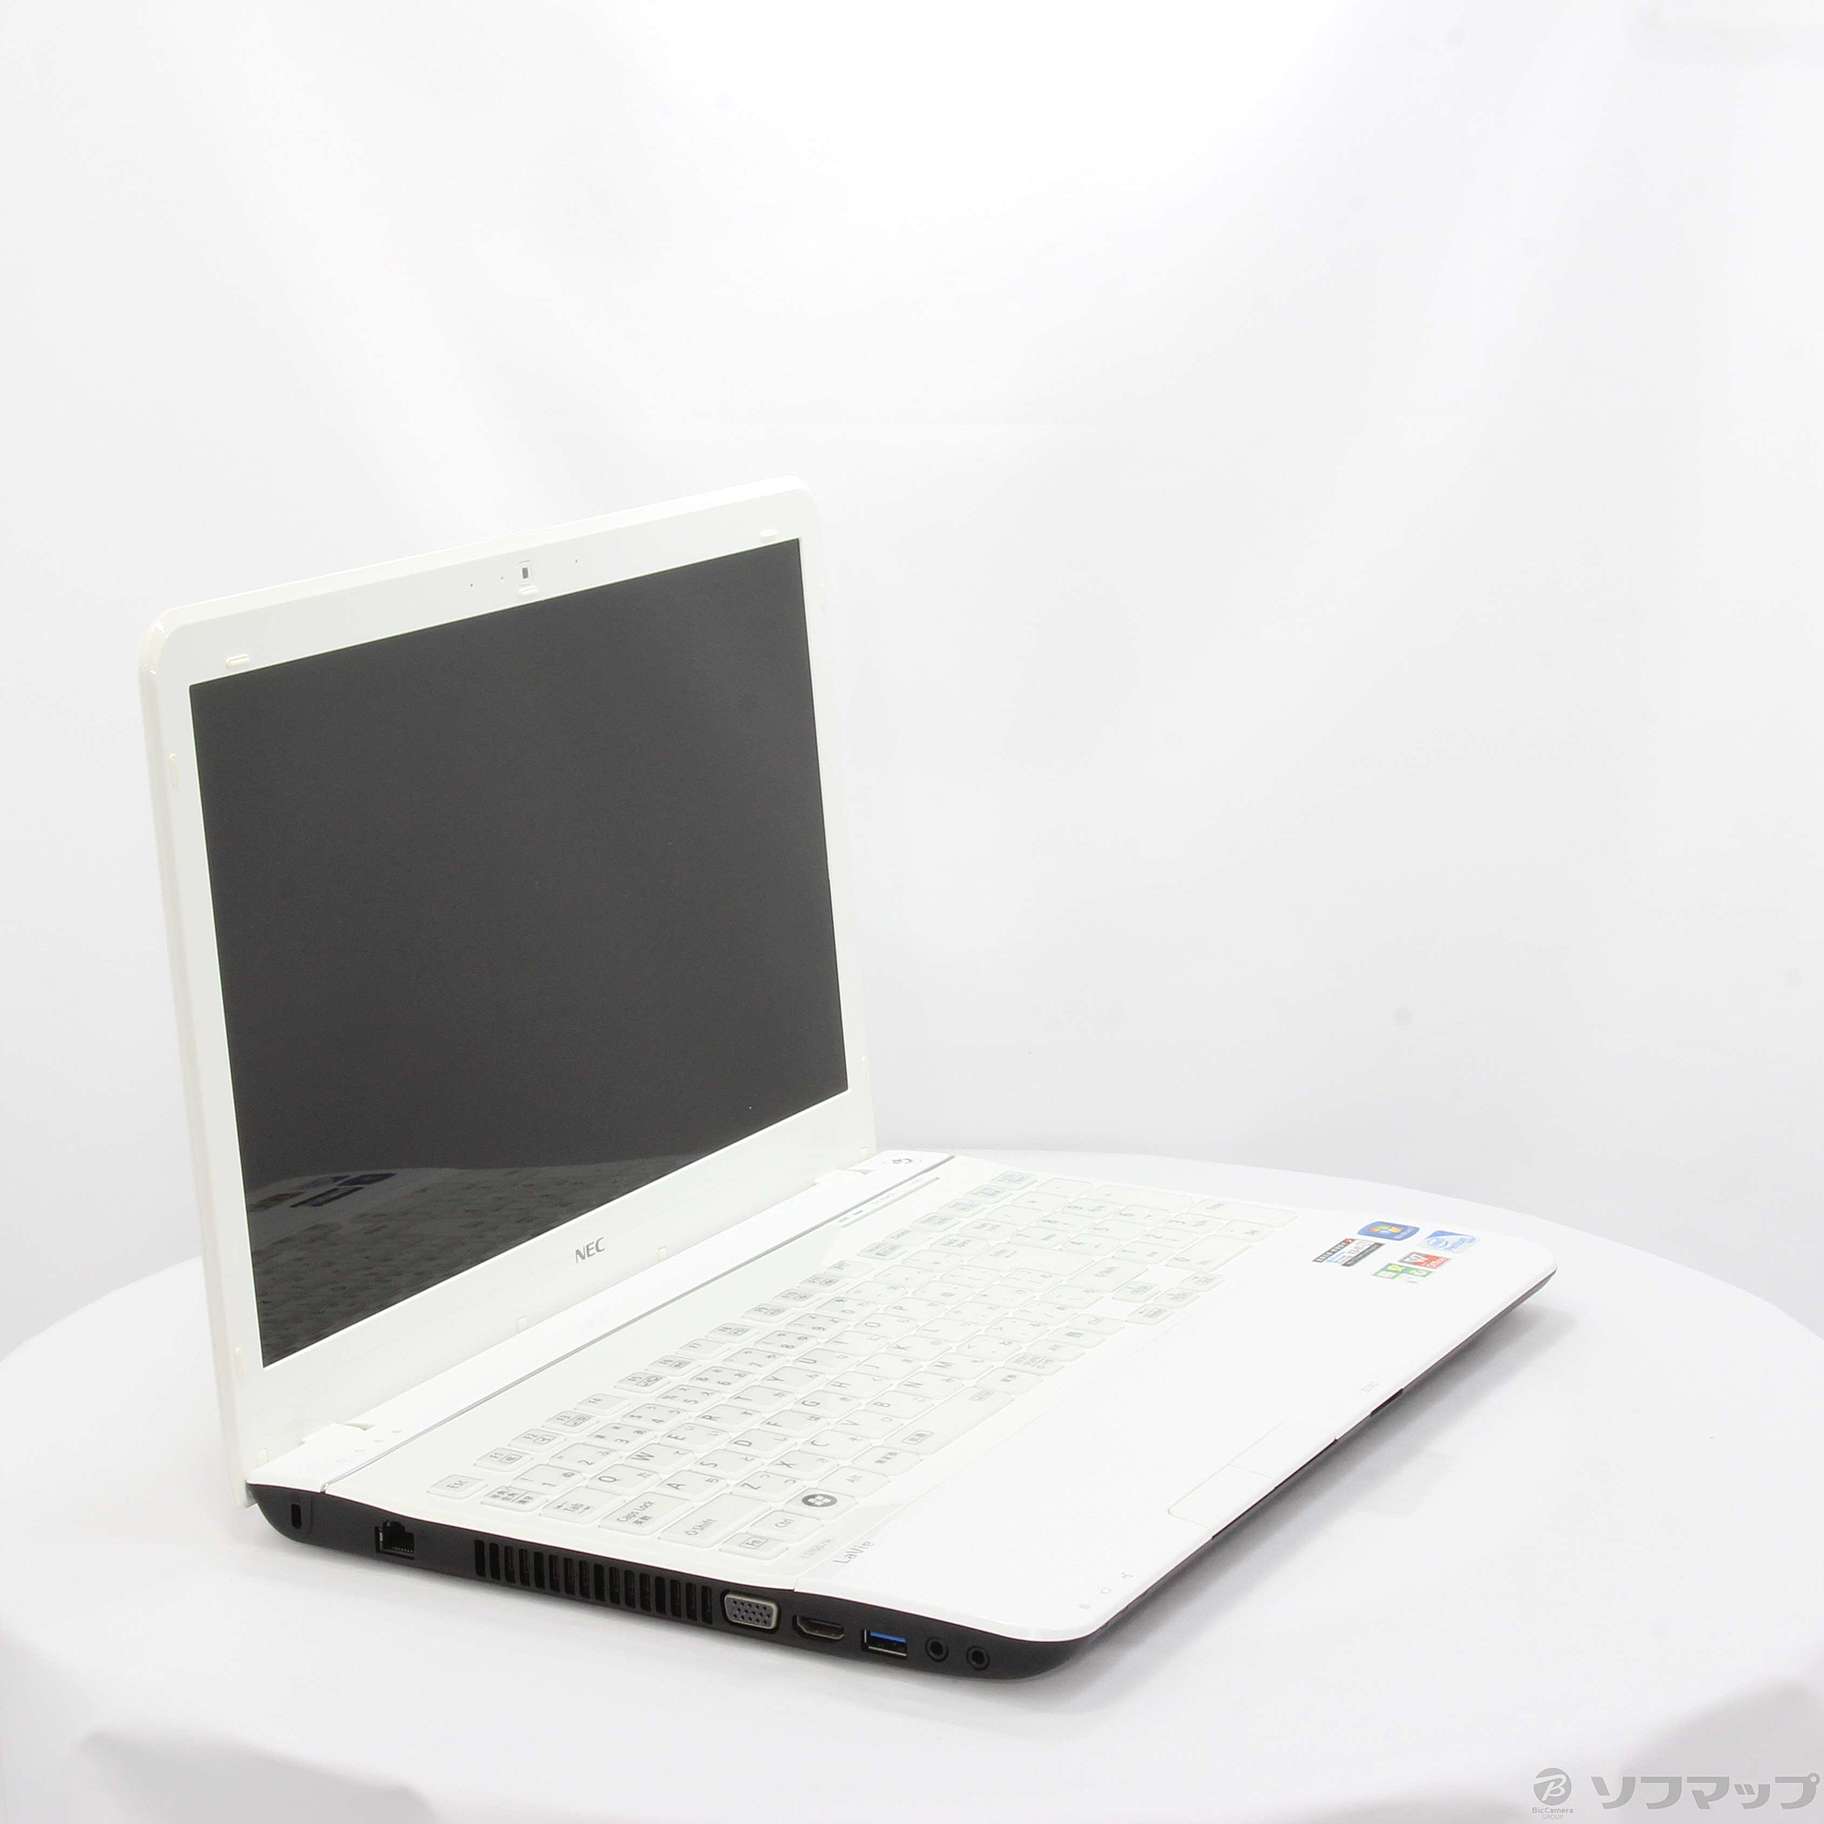 格安安心パソコン LaVie S PC-LS150HS1KSW クロスホワイト